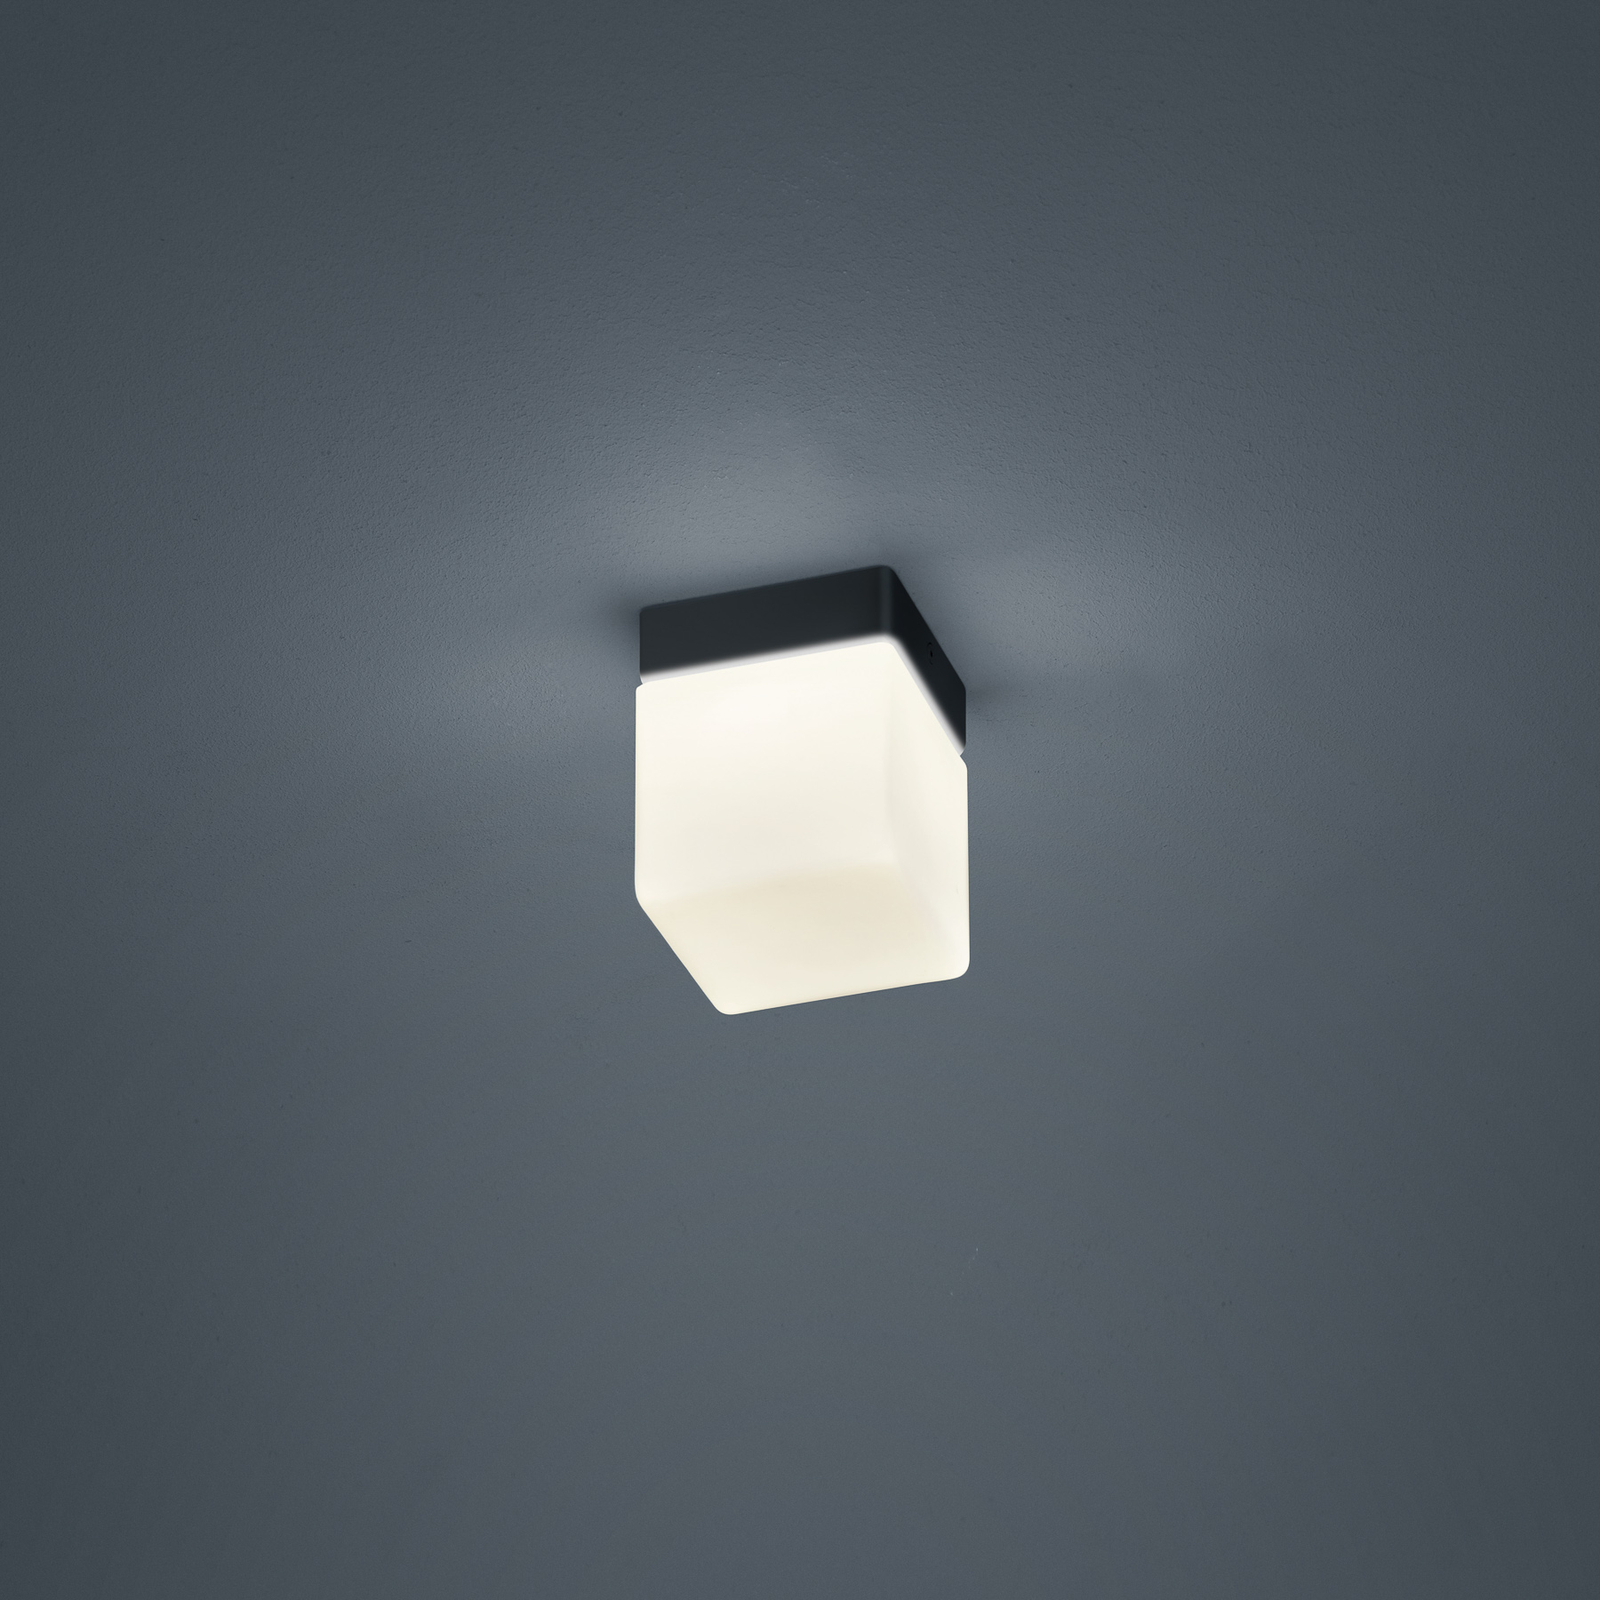 Helestra Keto LED ceiling light, cube, black